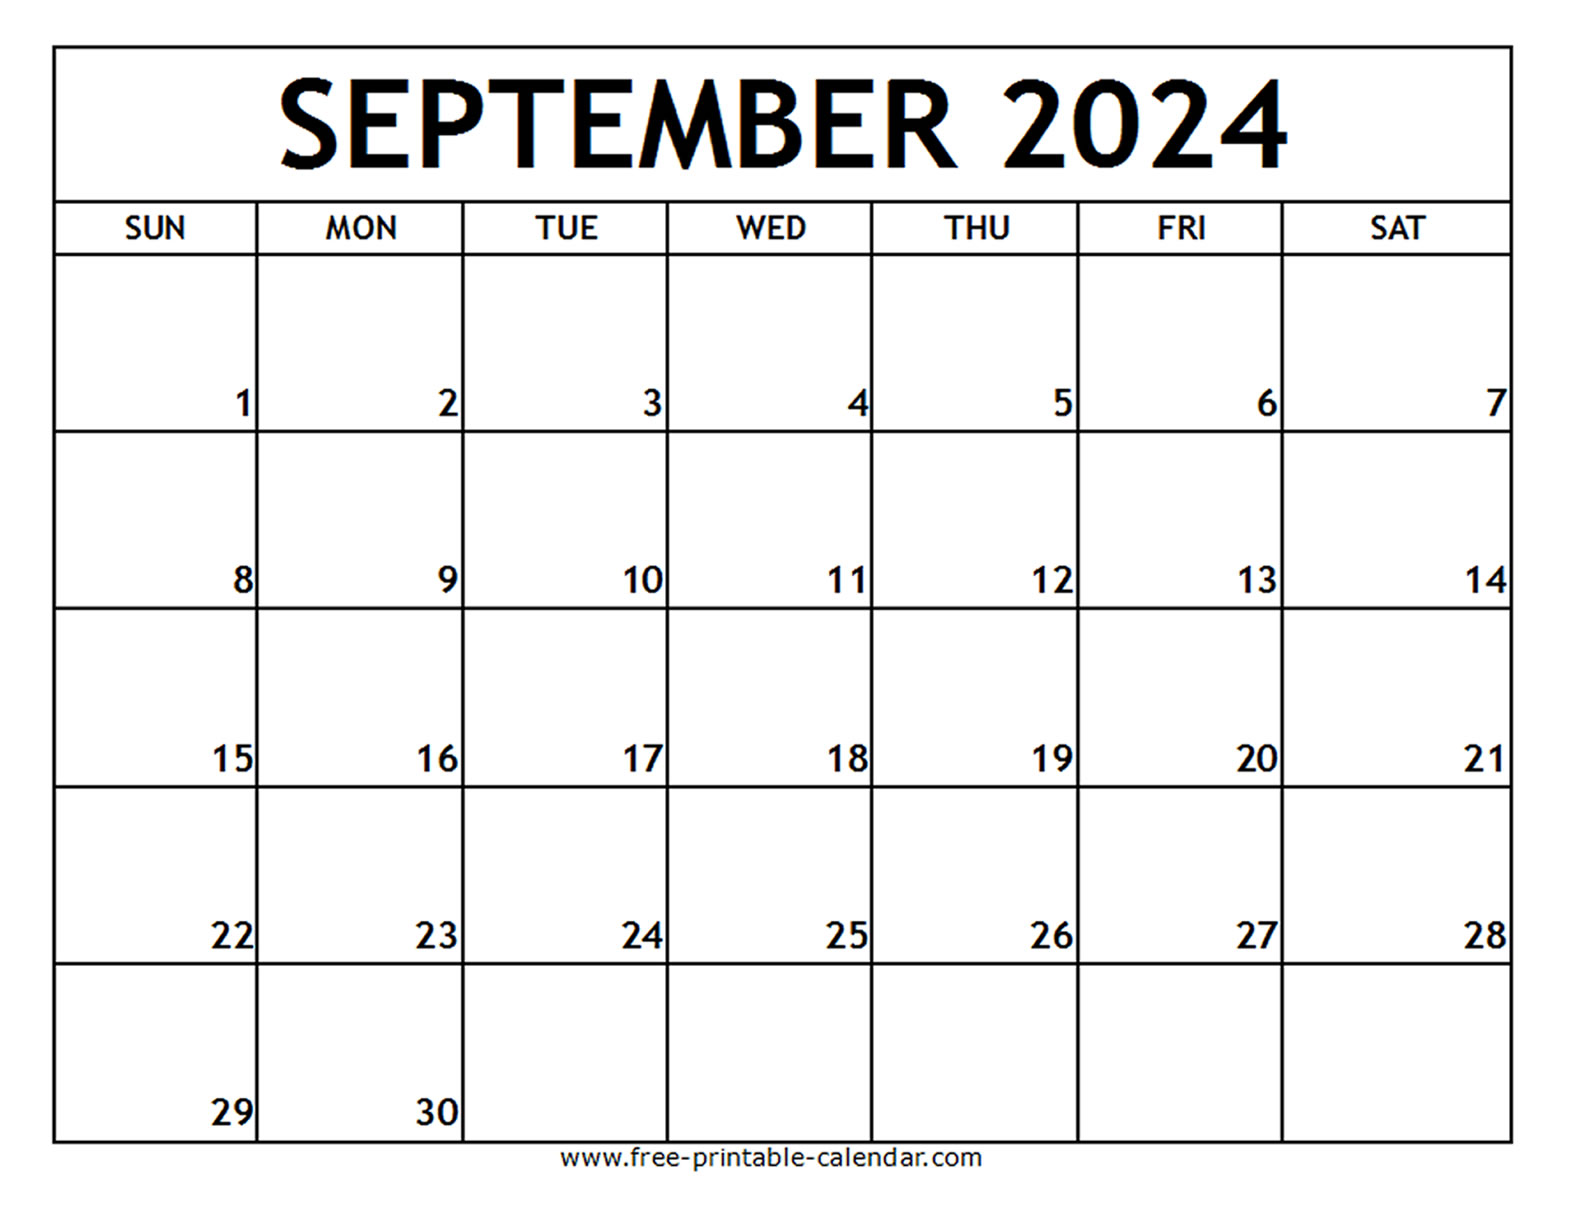 September 2024 Printable Calendar Free printable calendar com